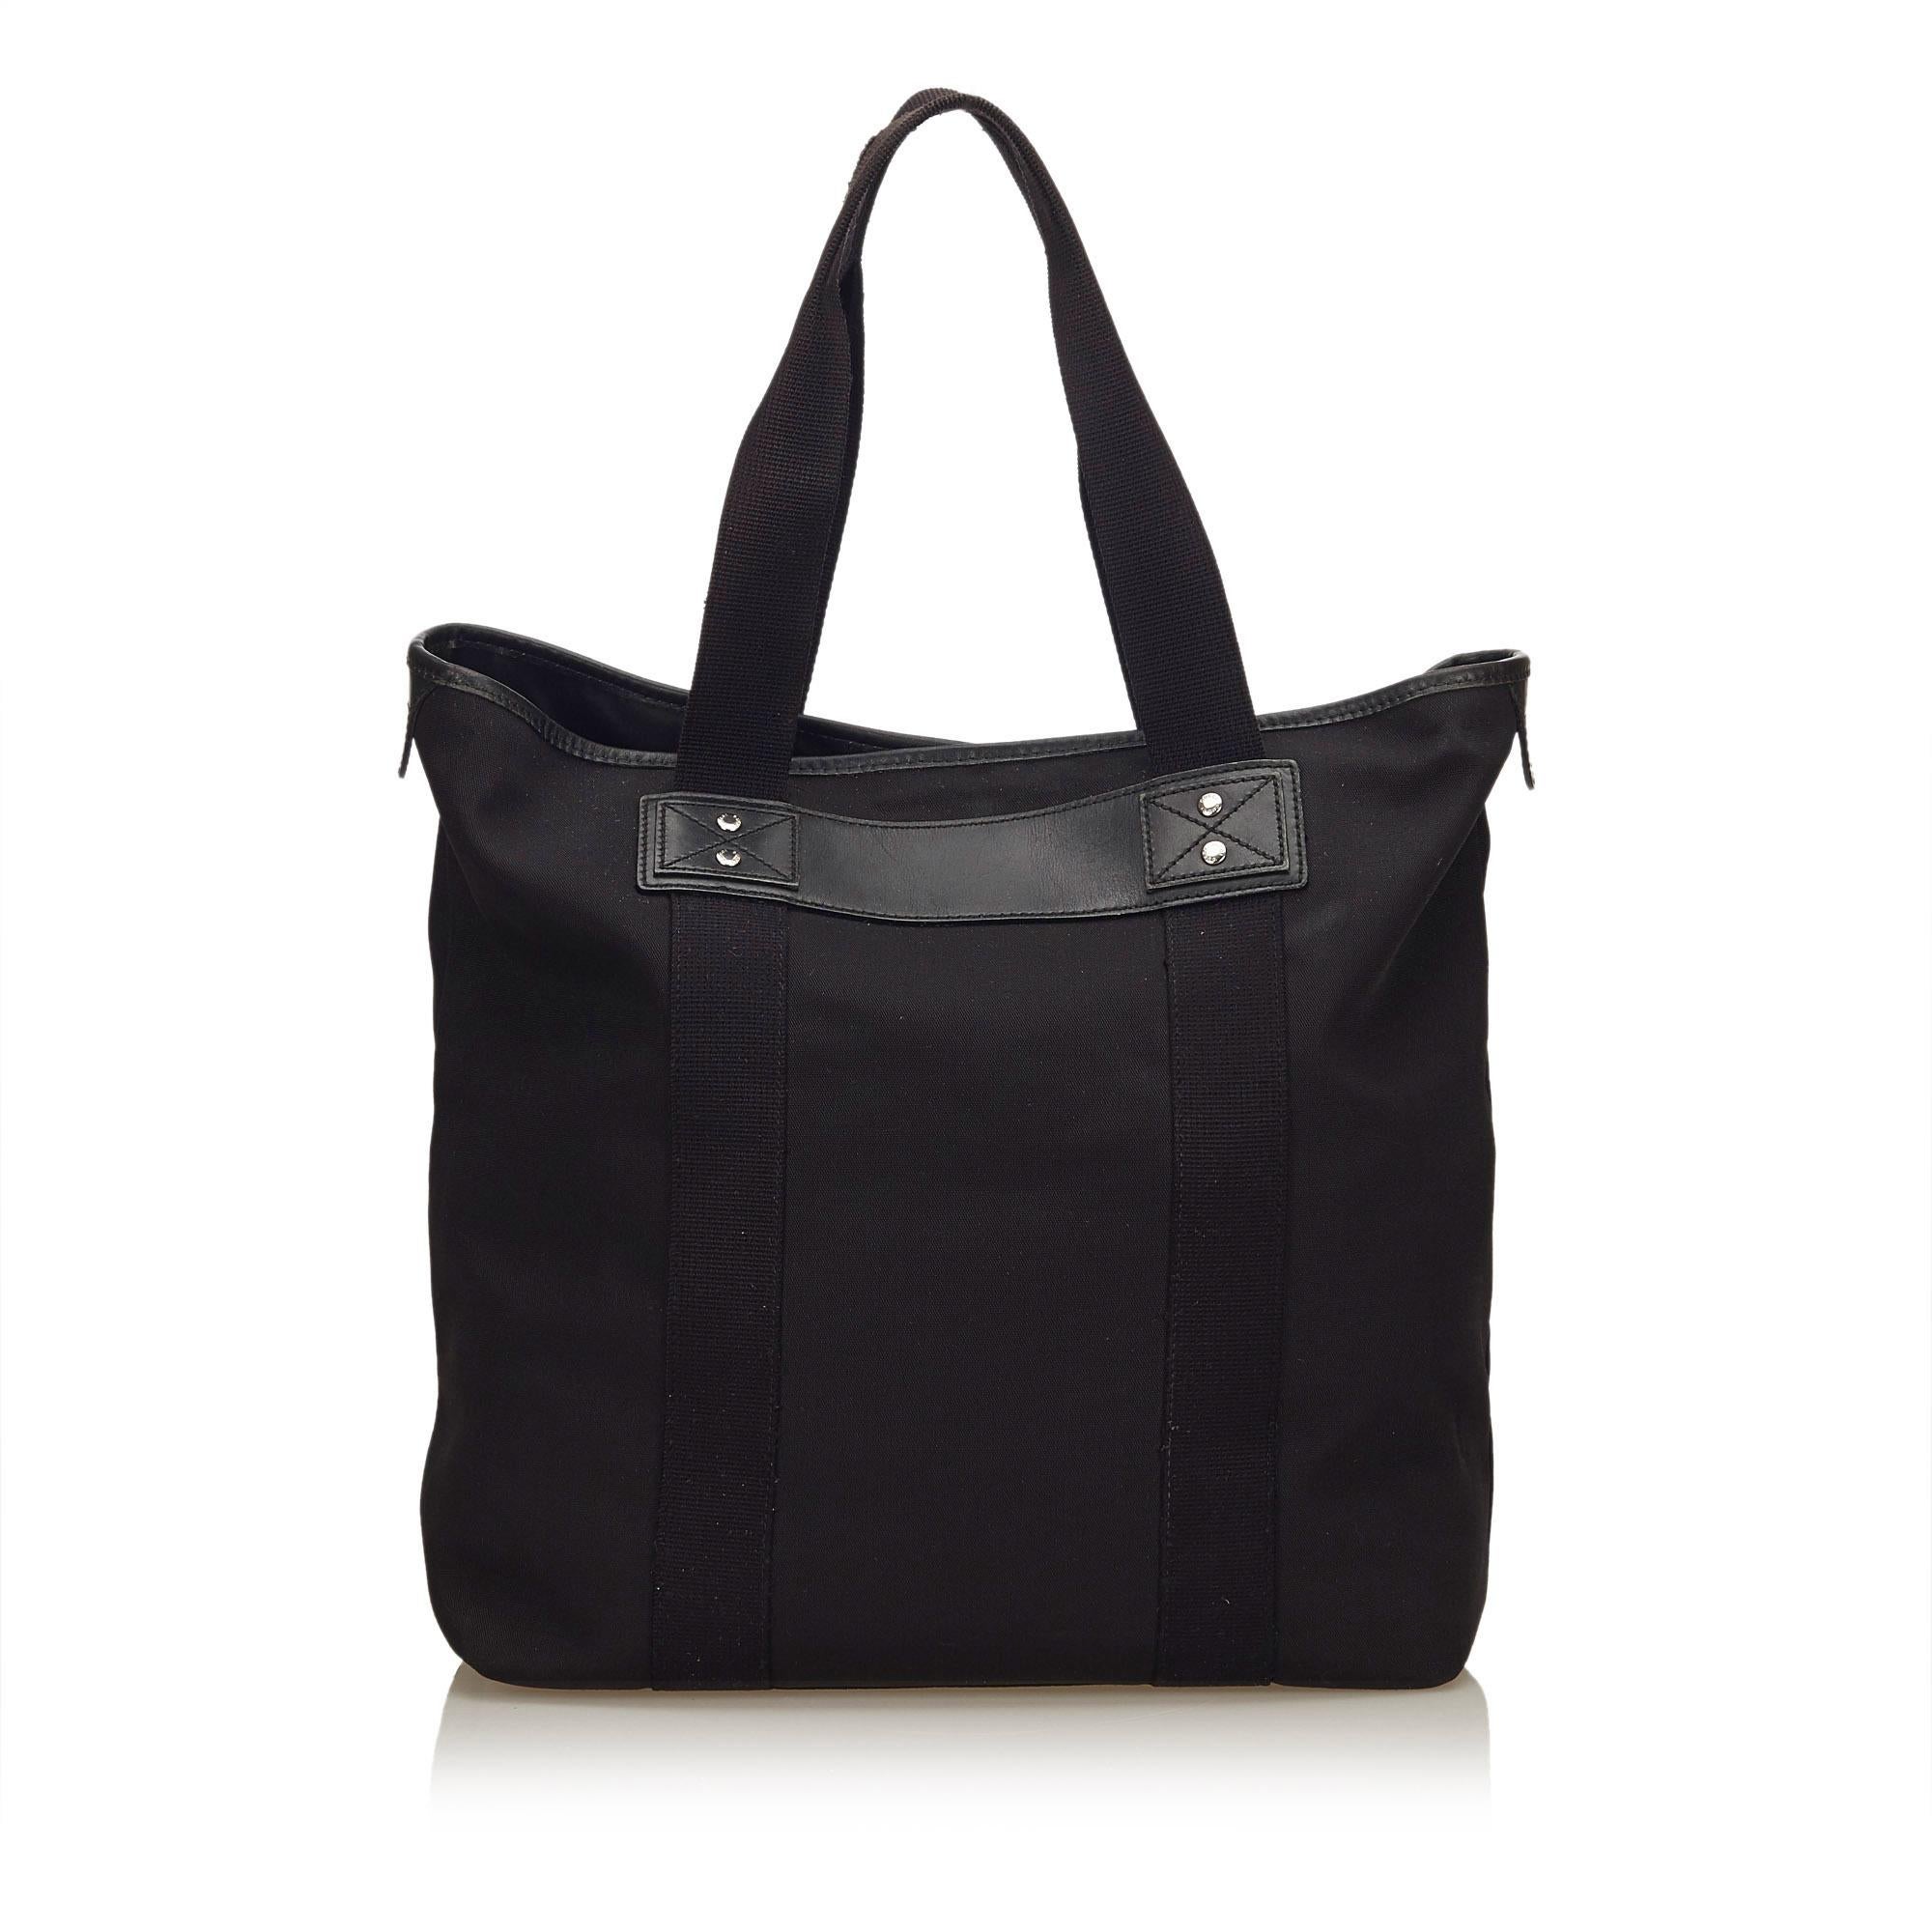 Gucci Black Canvas Tote Bag In Good Condition For Sale In Orlando, FL